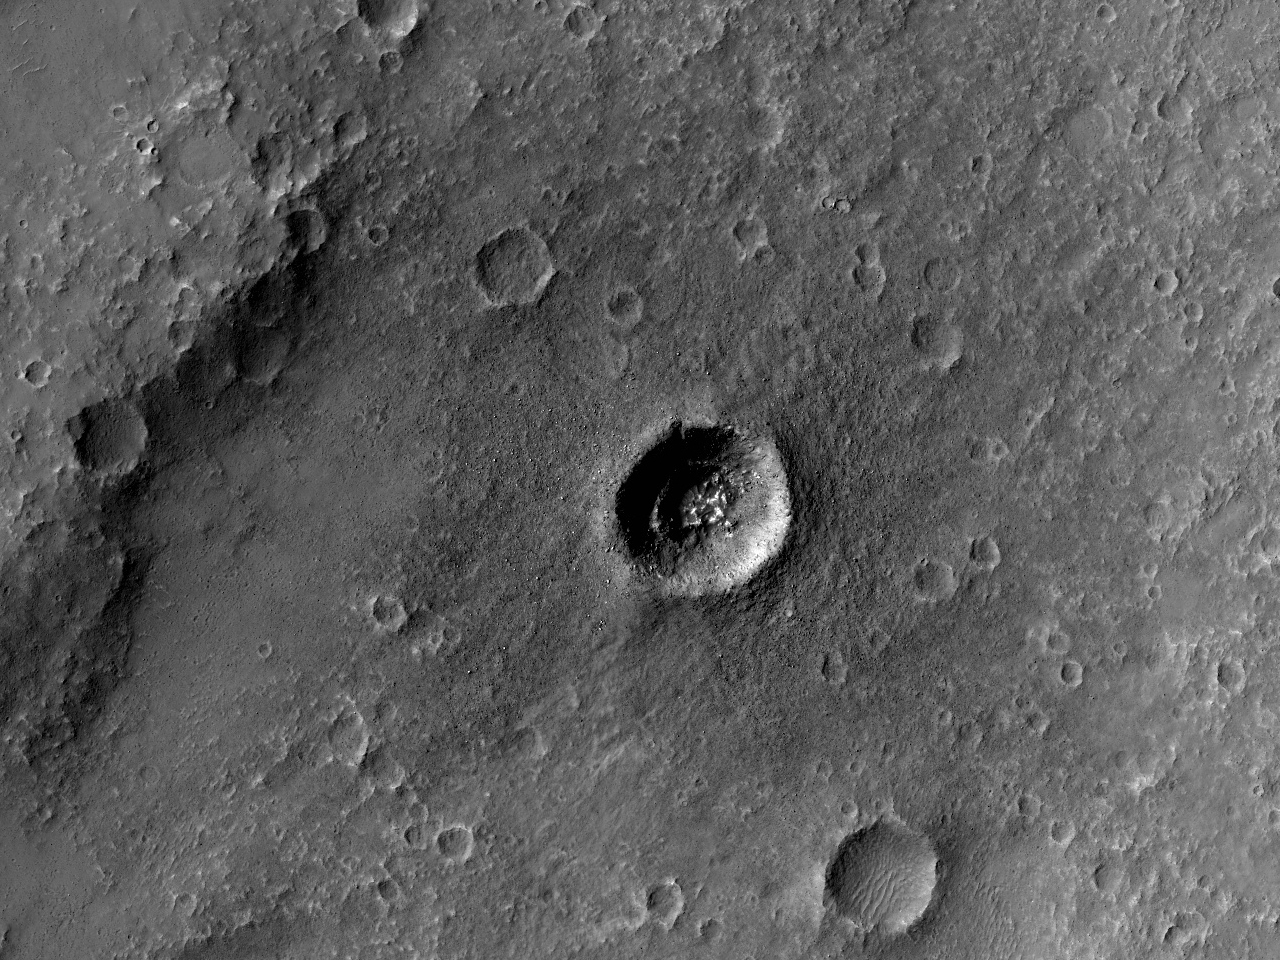 Μικρός Κρατήρας με Κλιμακωτό Εσωτερικό Τοίχωμα στ’ Οροπέδιο του Ηλίου (Solis Planum)